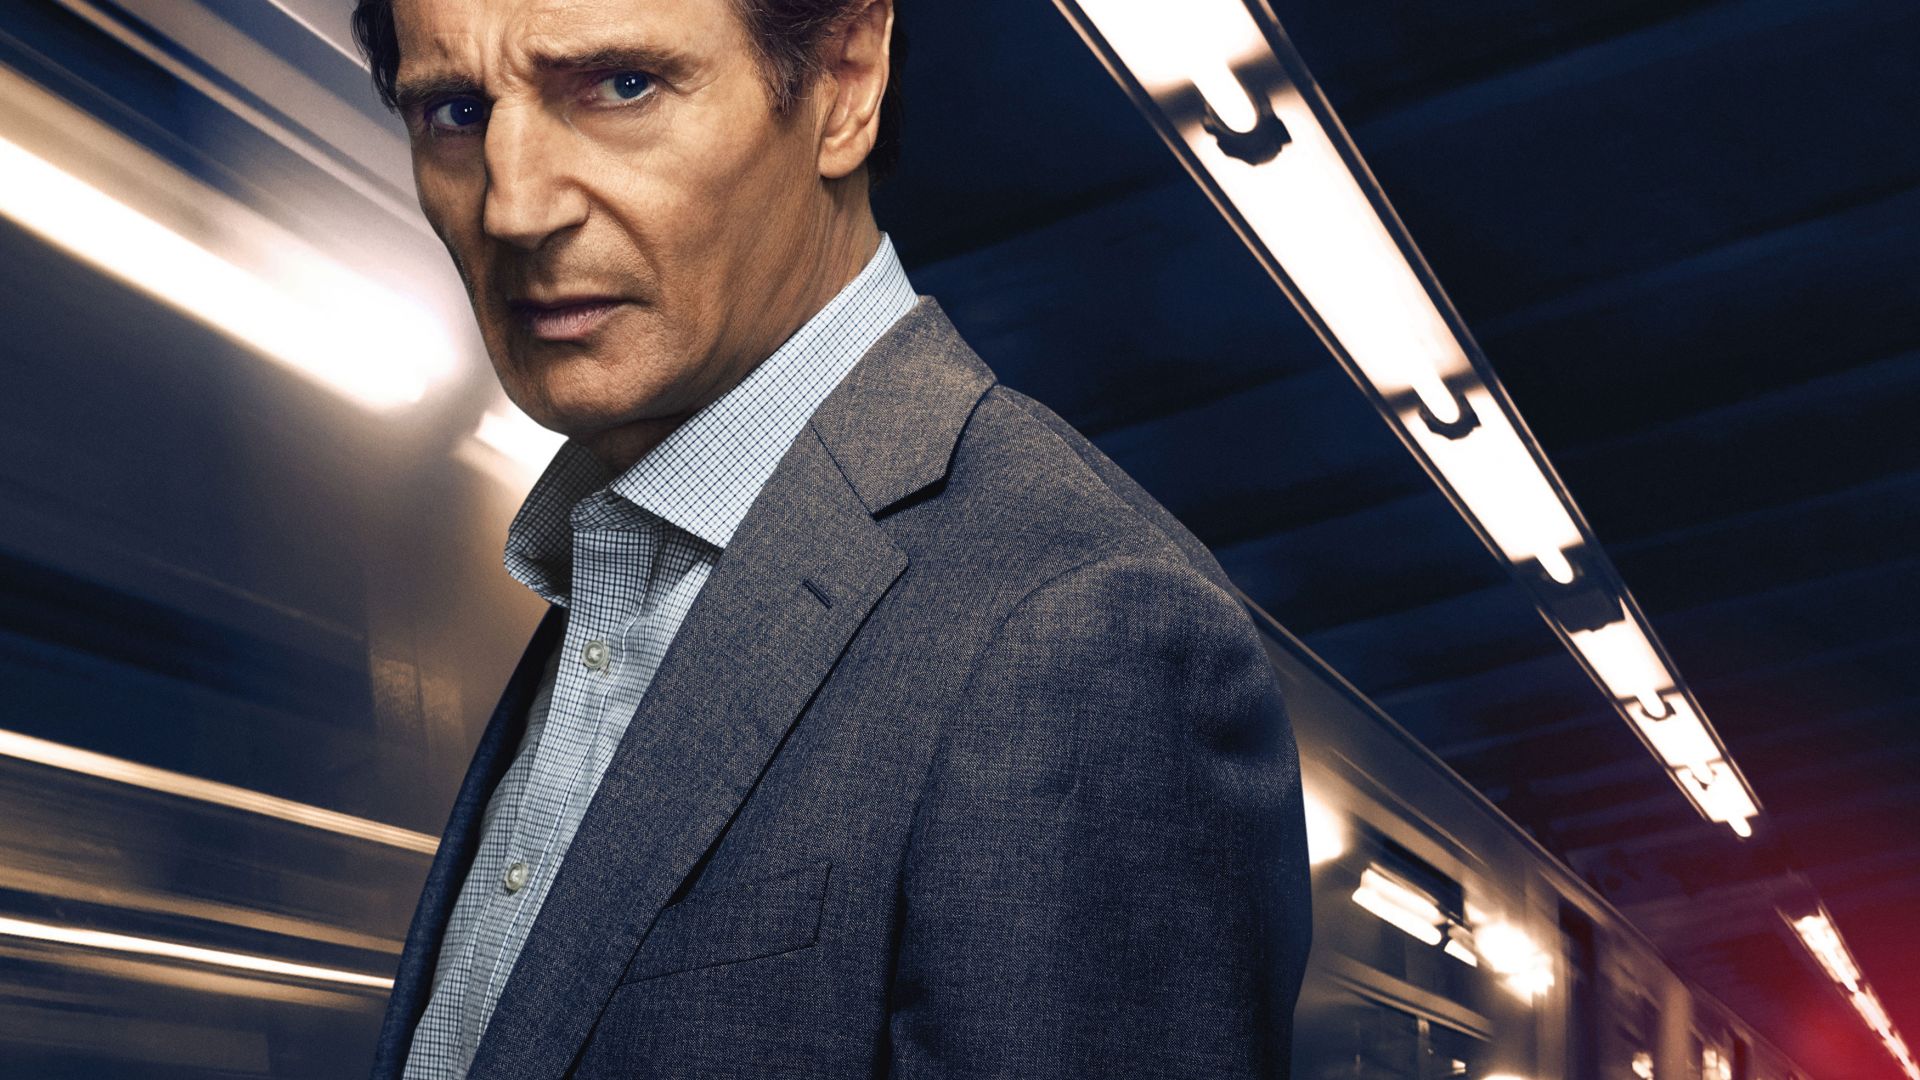 Пассажир, The Commuter, Liam Neeson, 4k (horizontal)